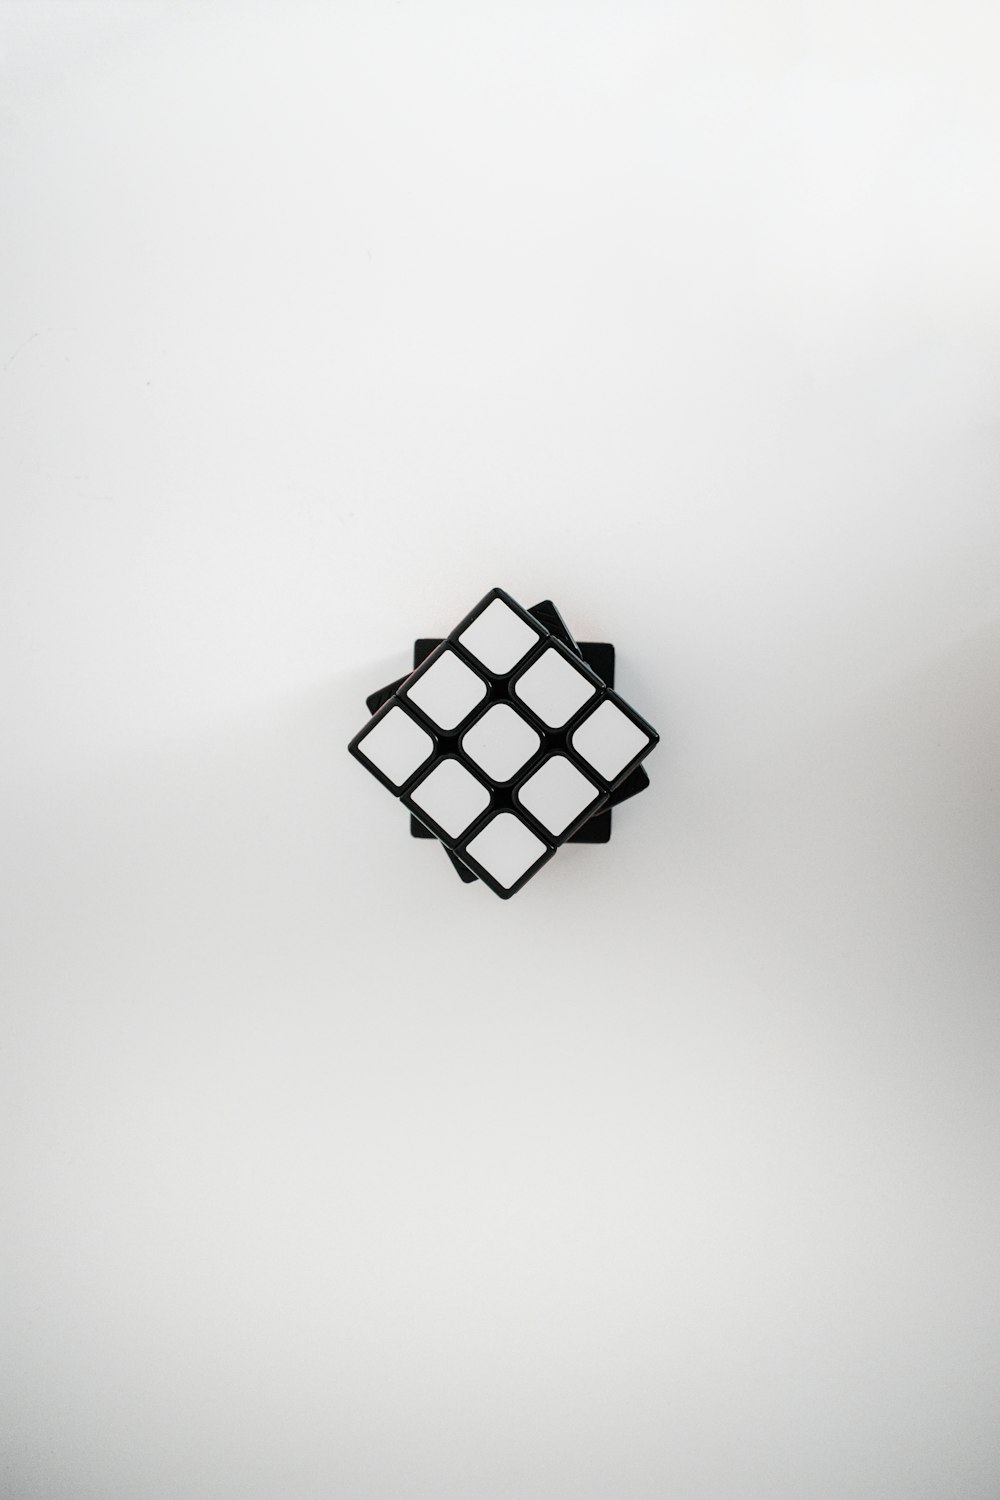 Imágenes de Fondo De Pantalla Del Cubo De Rubik | Descarga imágenes  gratuitas en Unsplash